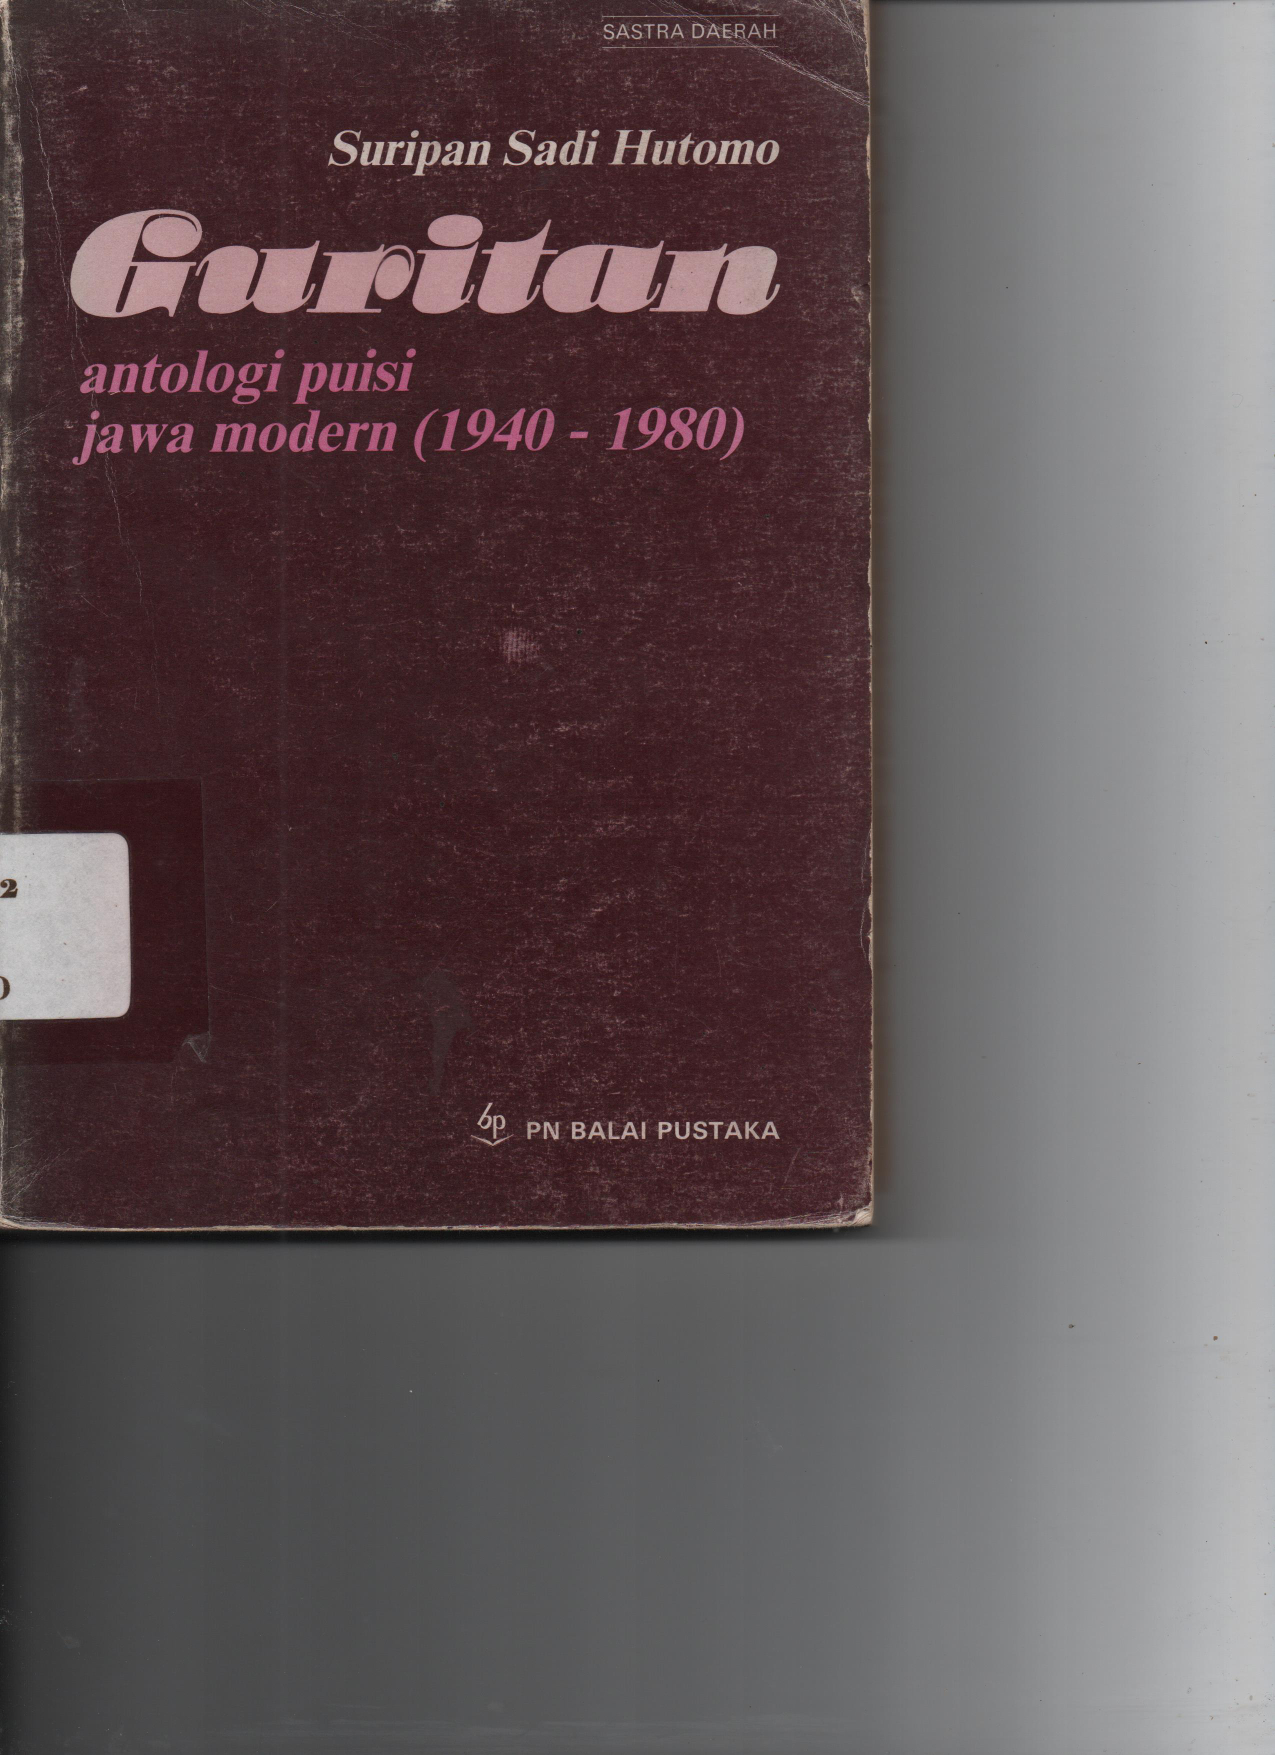 Guritan Antologi Puisi Jawa Modern 1940-1980 cet 1